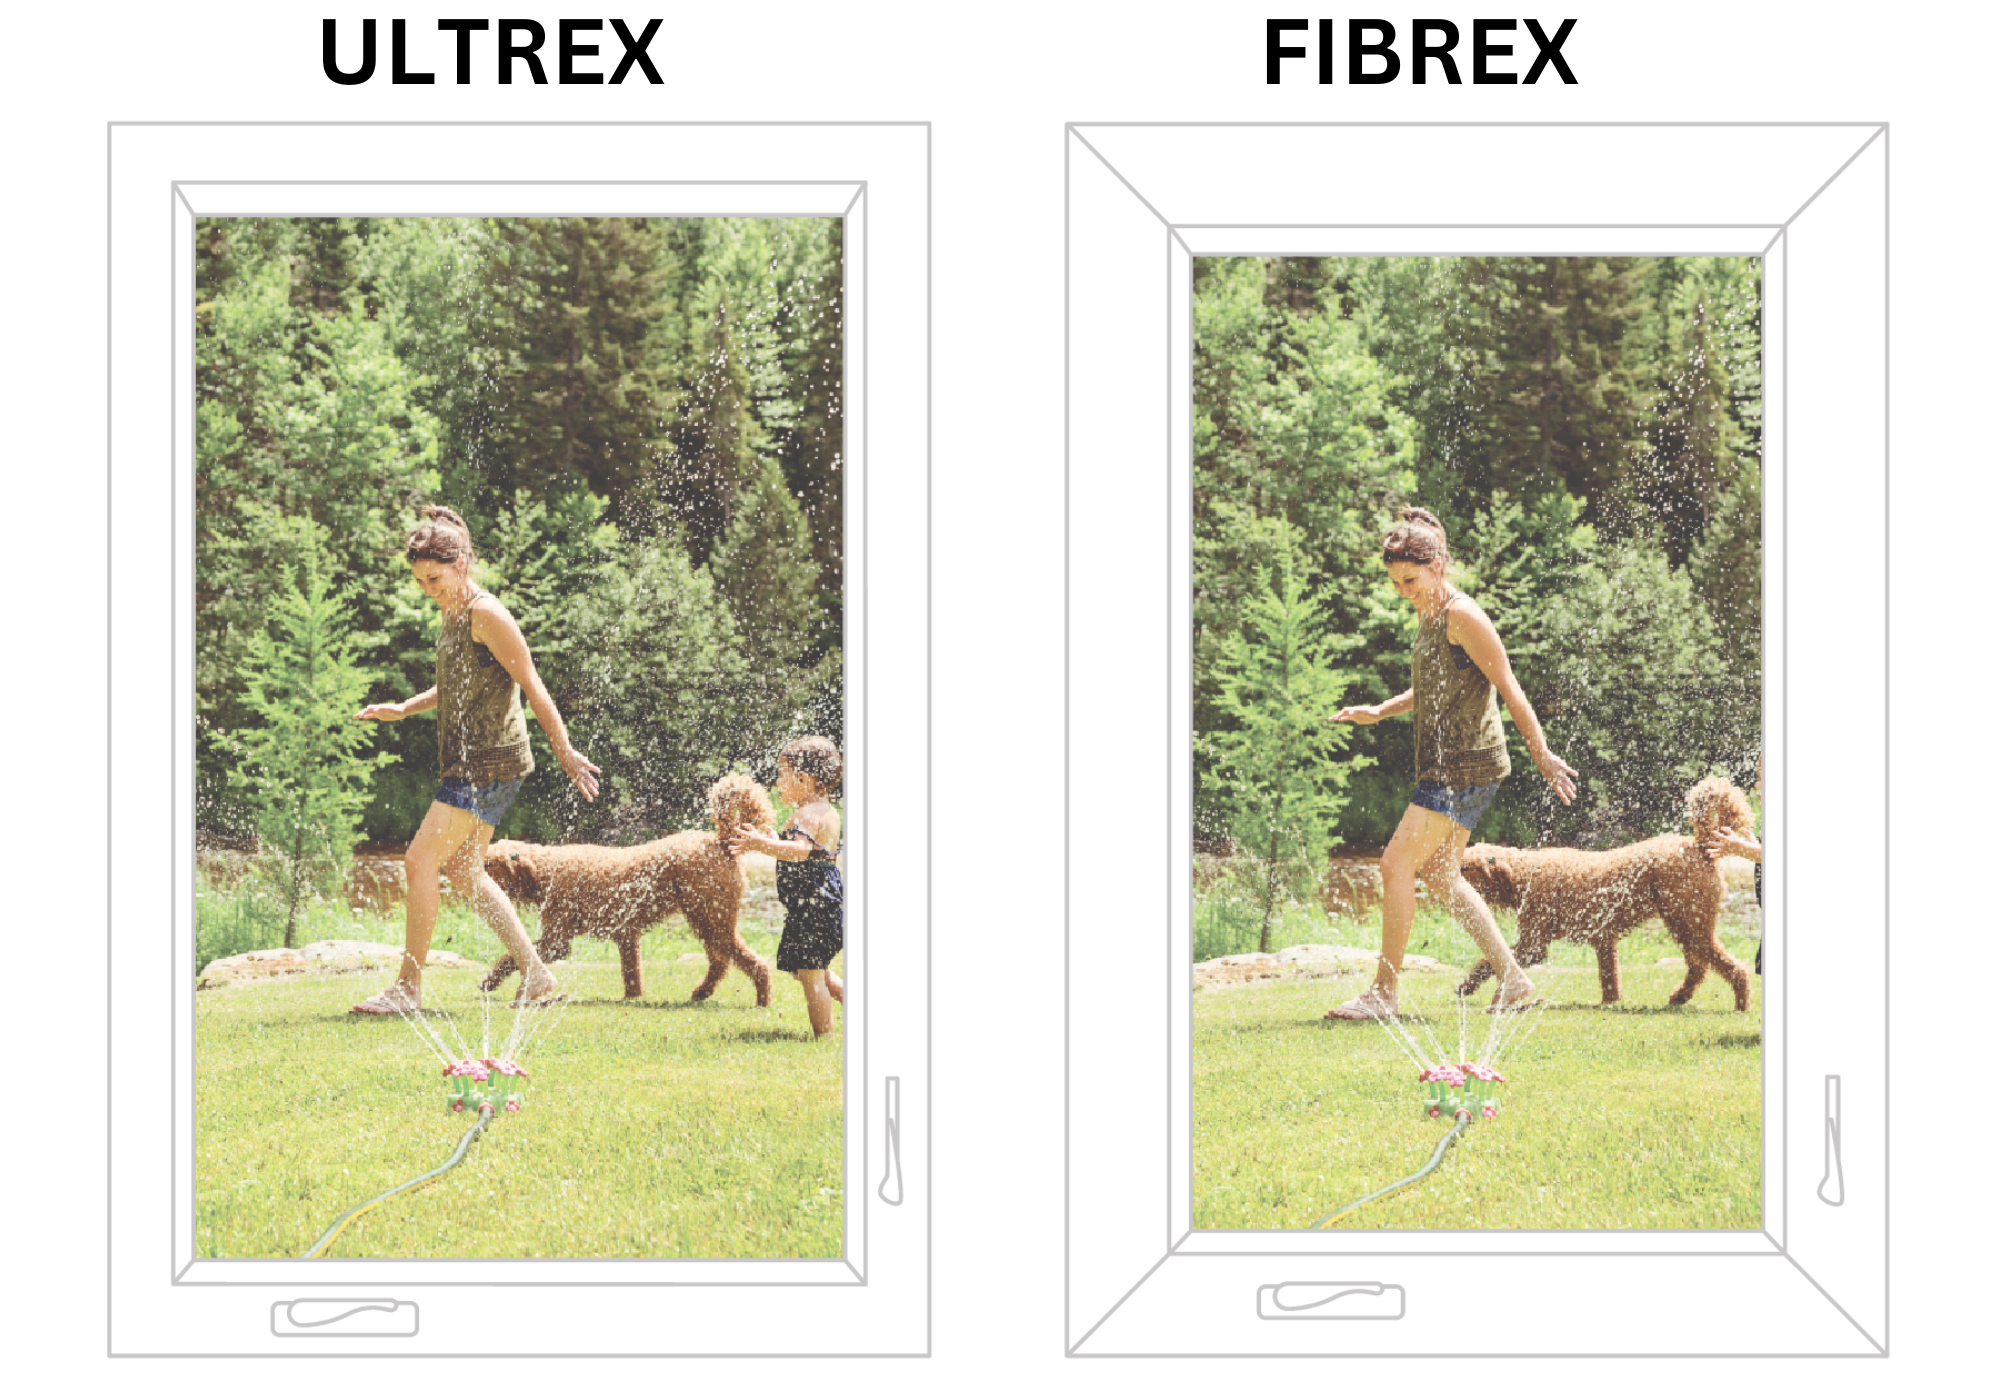 RBA Fibrex vs. Infinity Ultrex